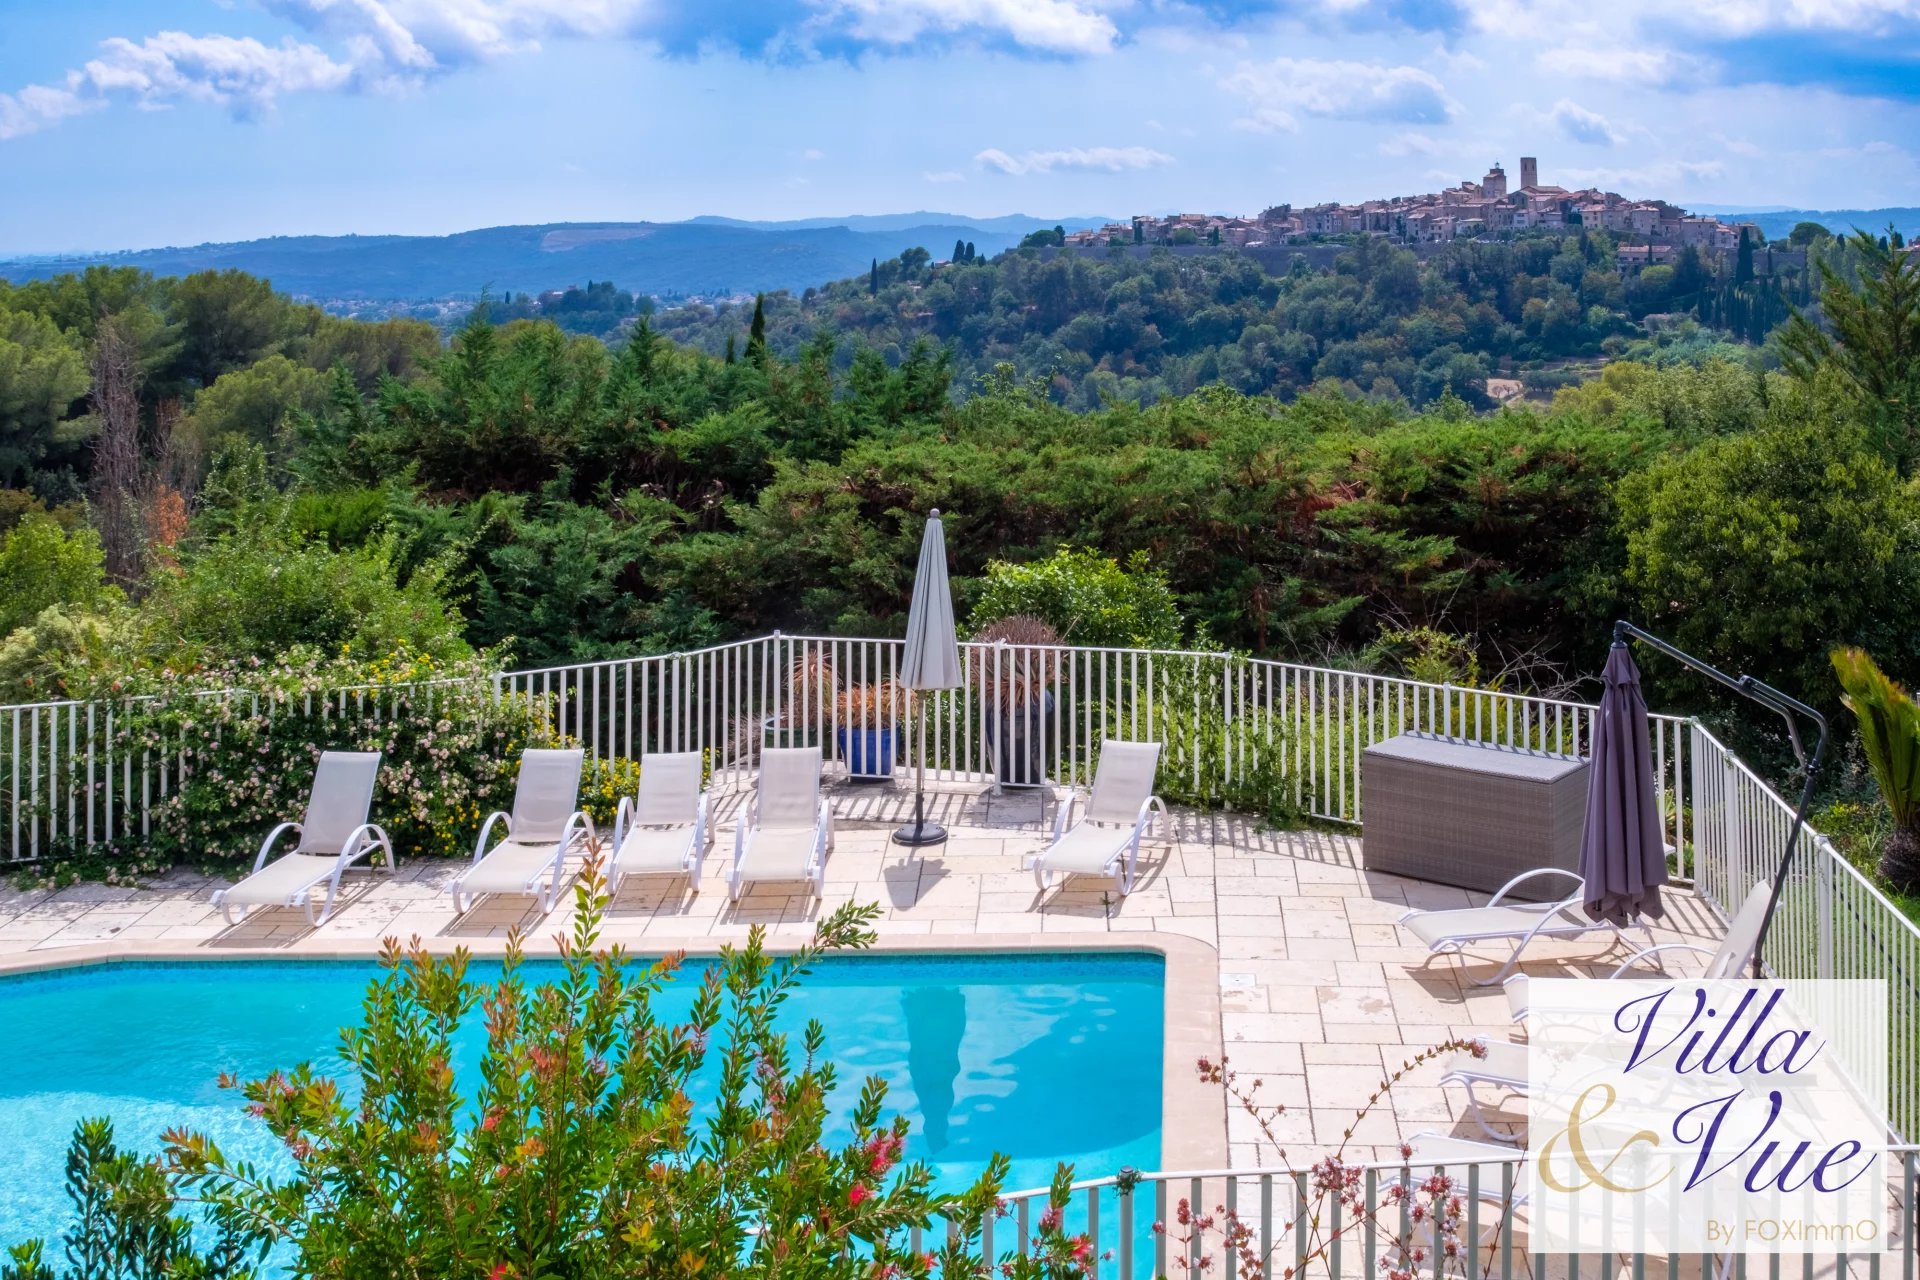 Entre Nice et Cannes, superbe bastide, calme, piscine, parking vue panoramique